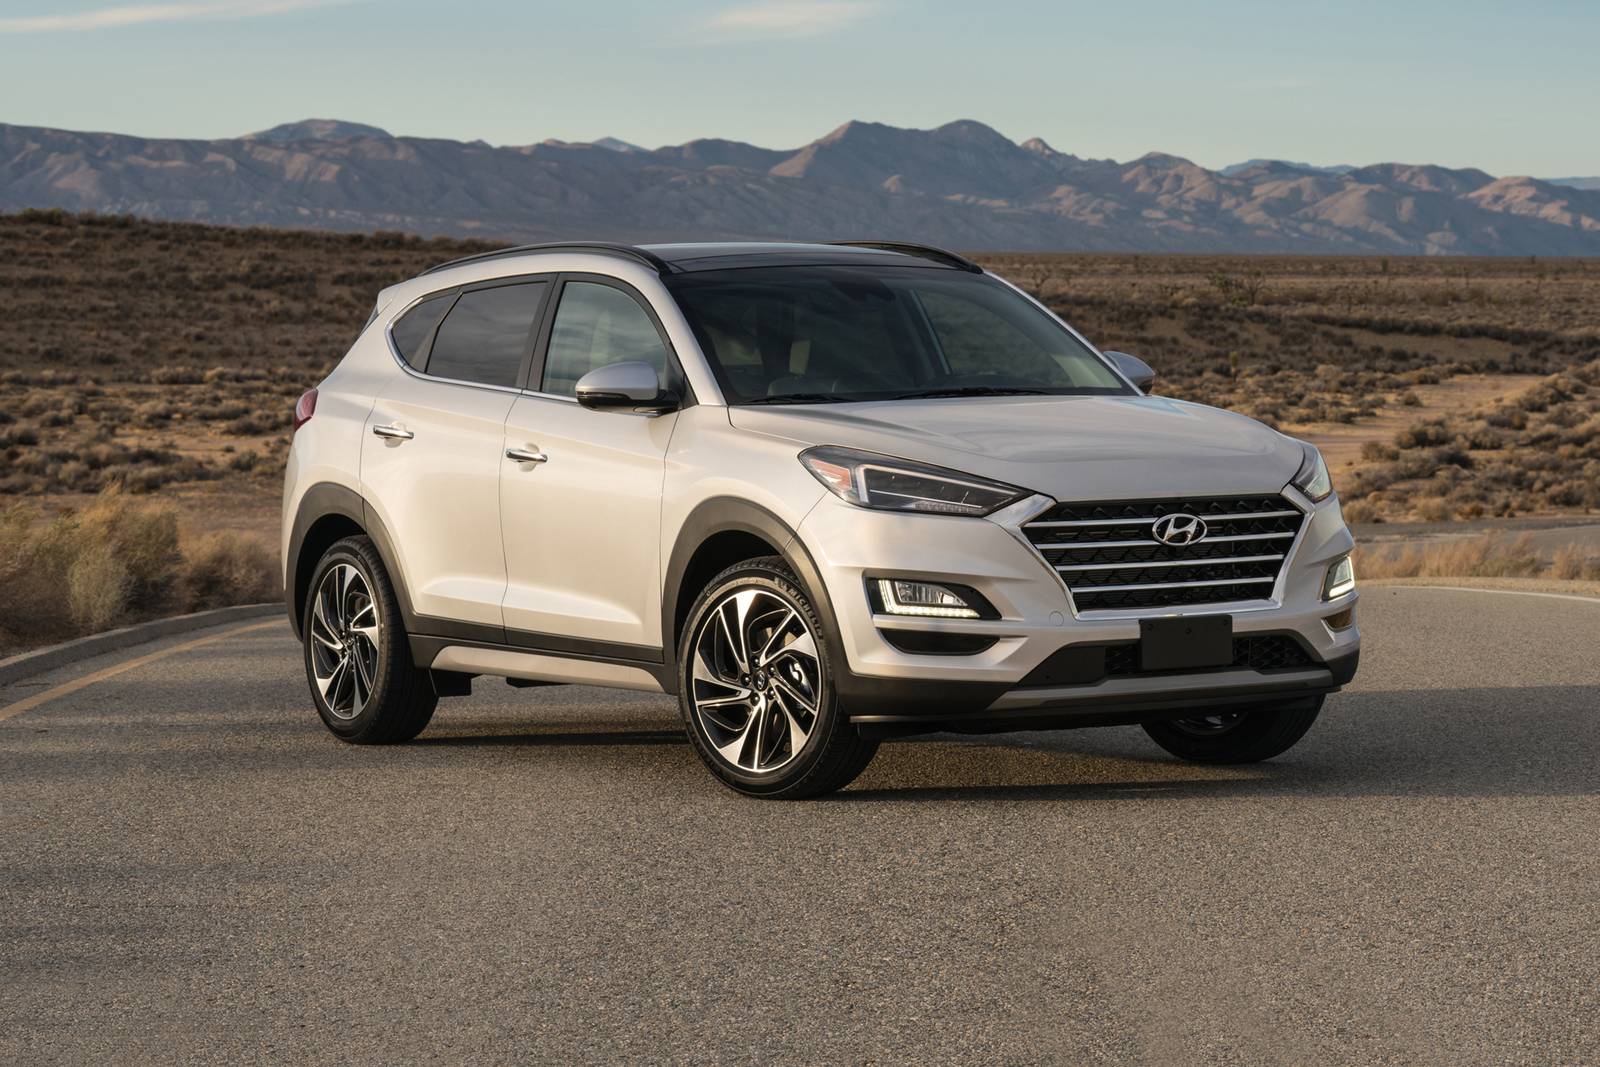 2019 Hyundai Tucson Review & Ratings | Edmunds